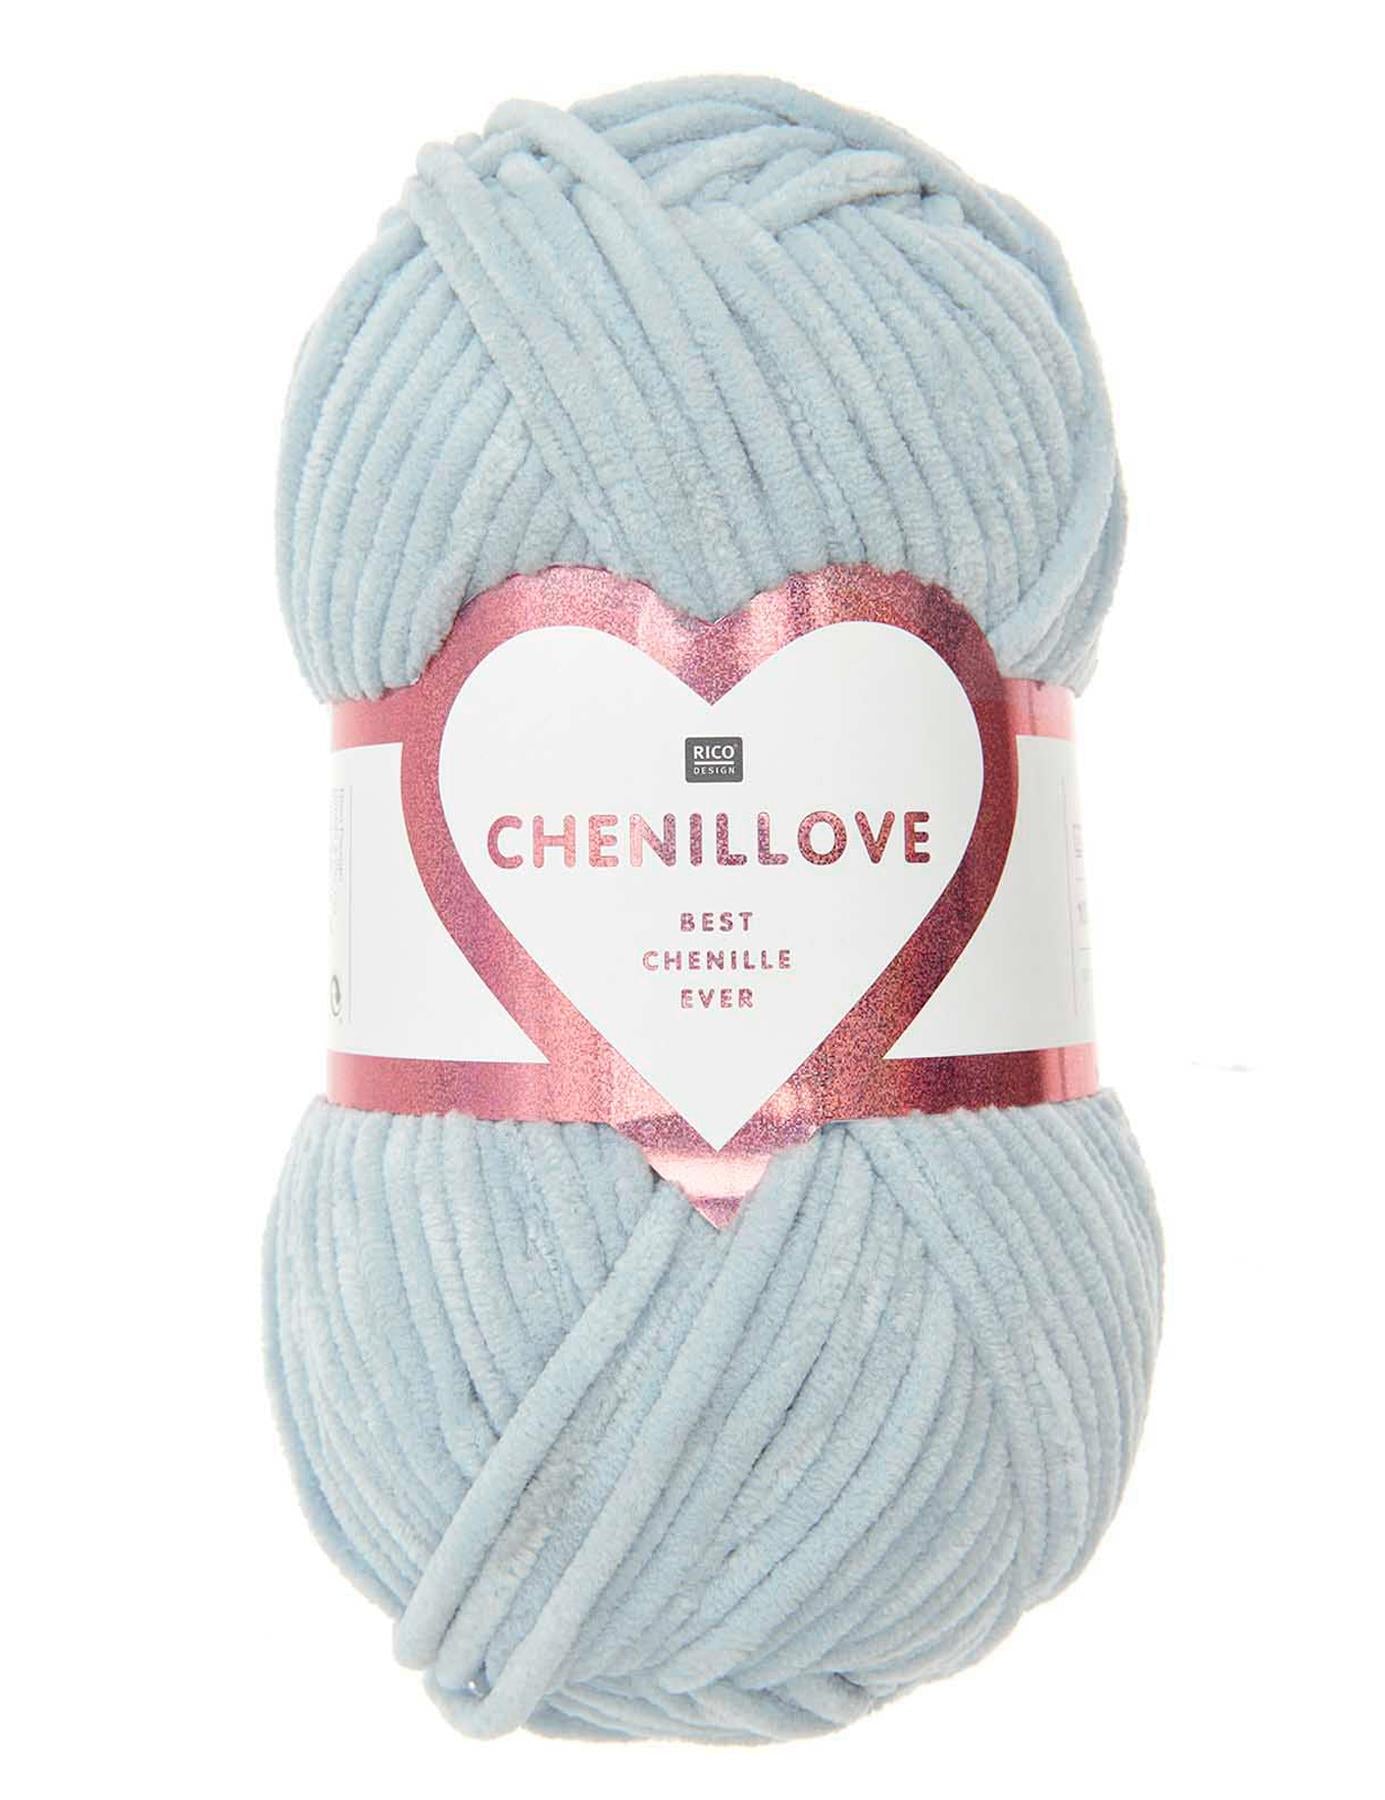 RICO Chenillove Light Blue (010) chenille yarn - 100g